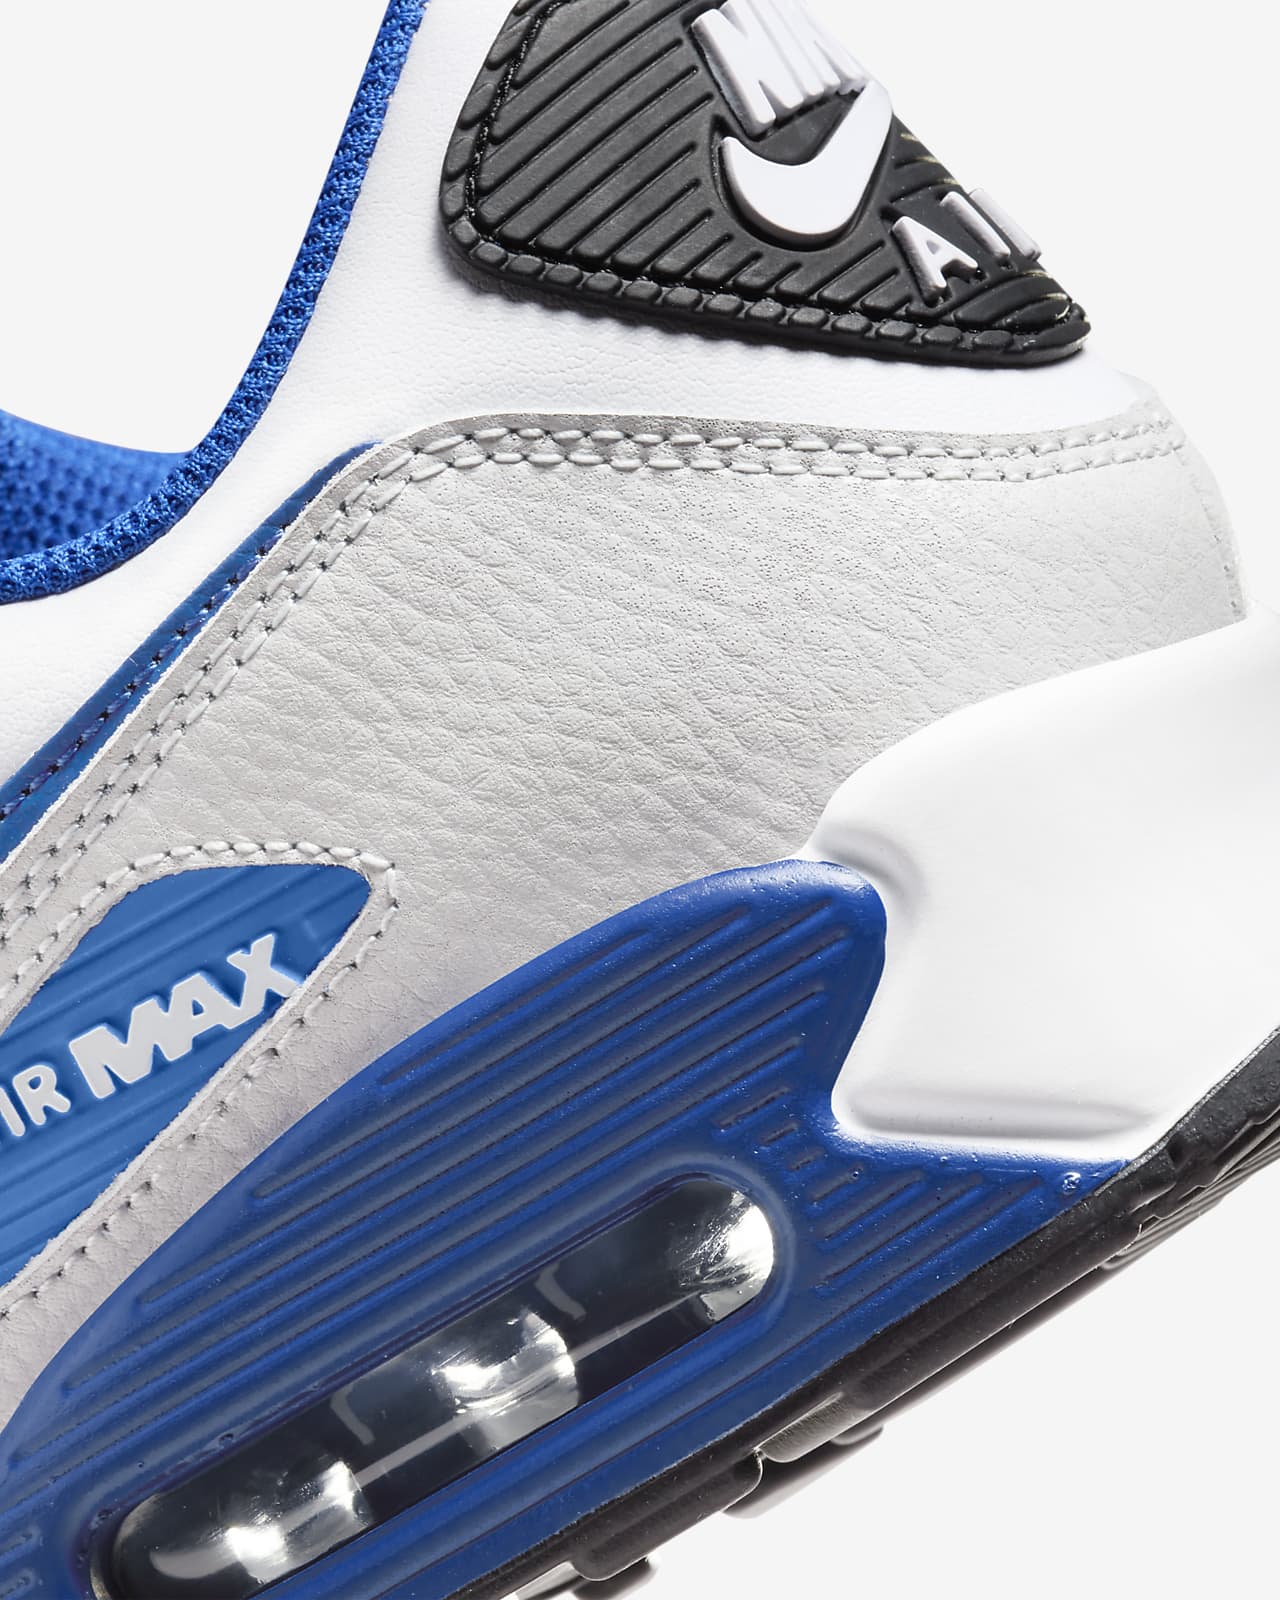 Nike Air Max 90 Recraft White Black (2020)  Nike air max blanche,  Chaussure nike air, Chaussures air max